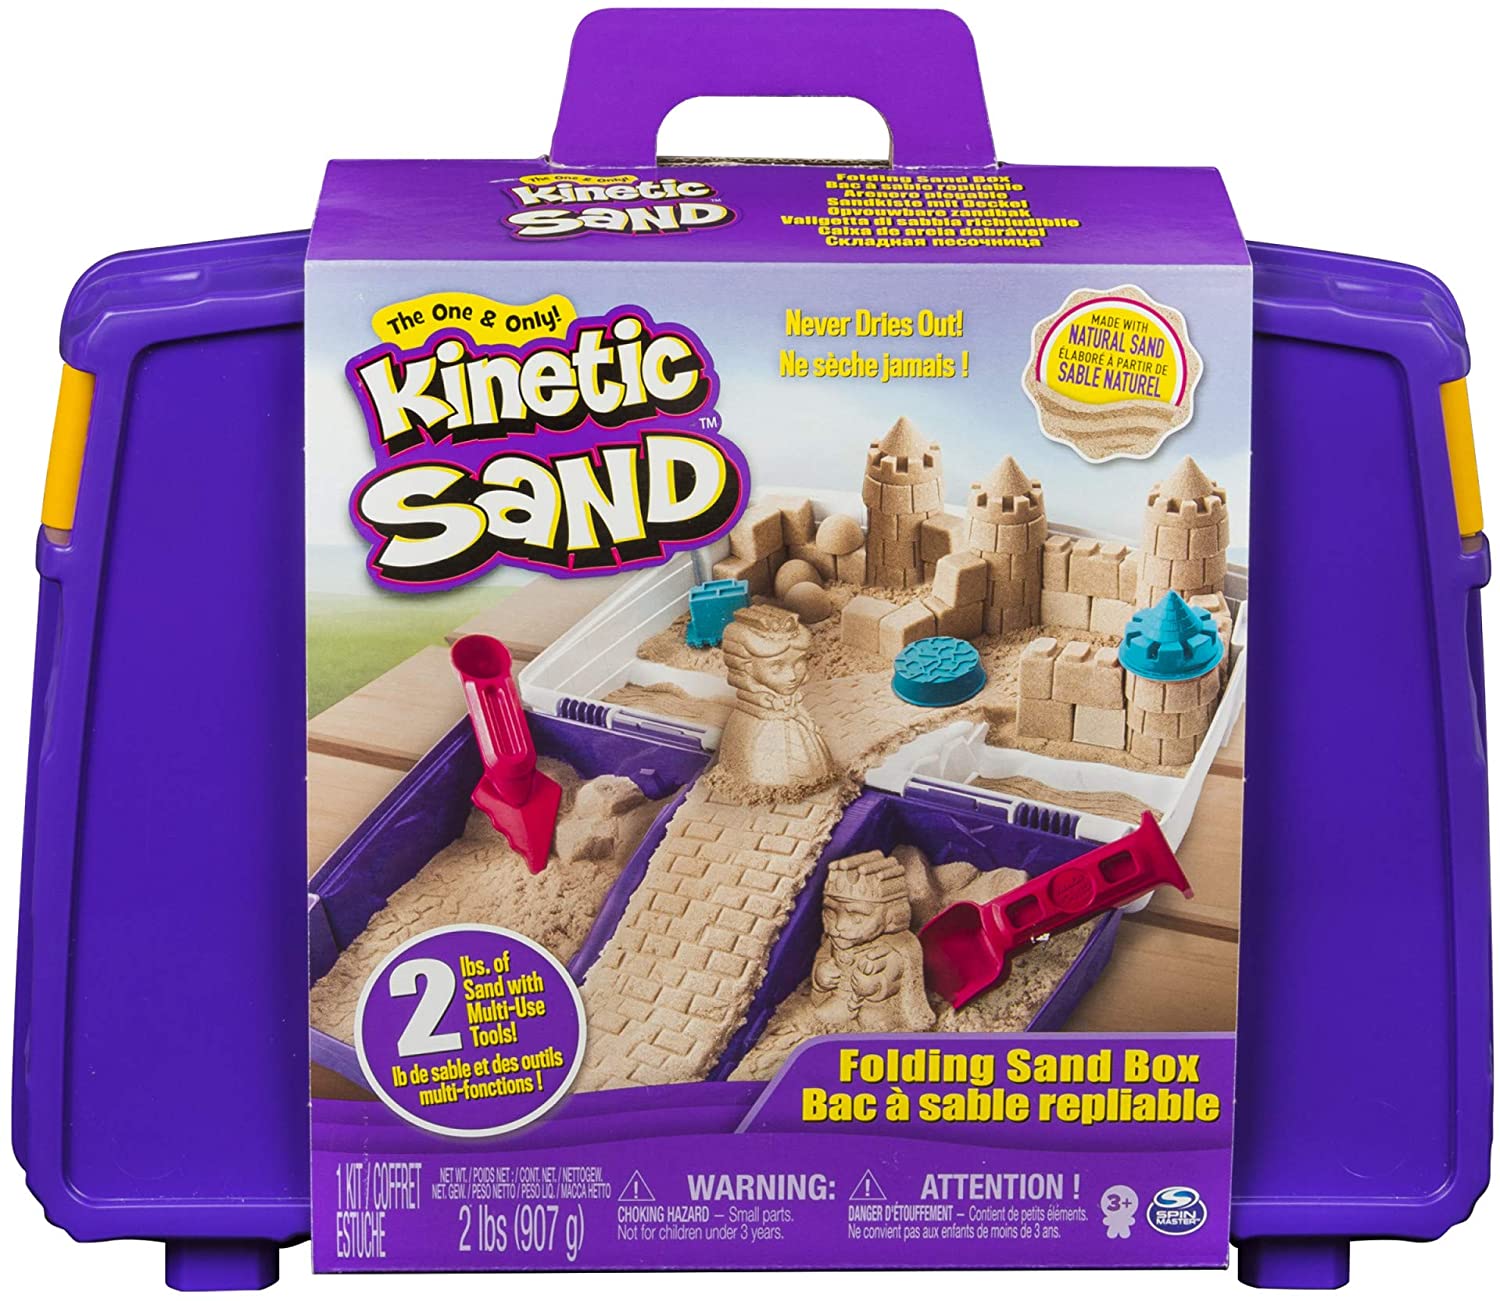 https://www.robot-advance.com/ori-kinetic-sand-mallette-900g-sable-3045.jpg